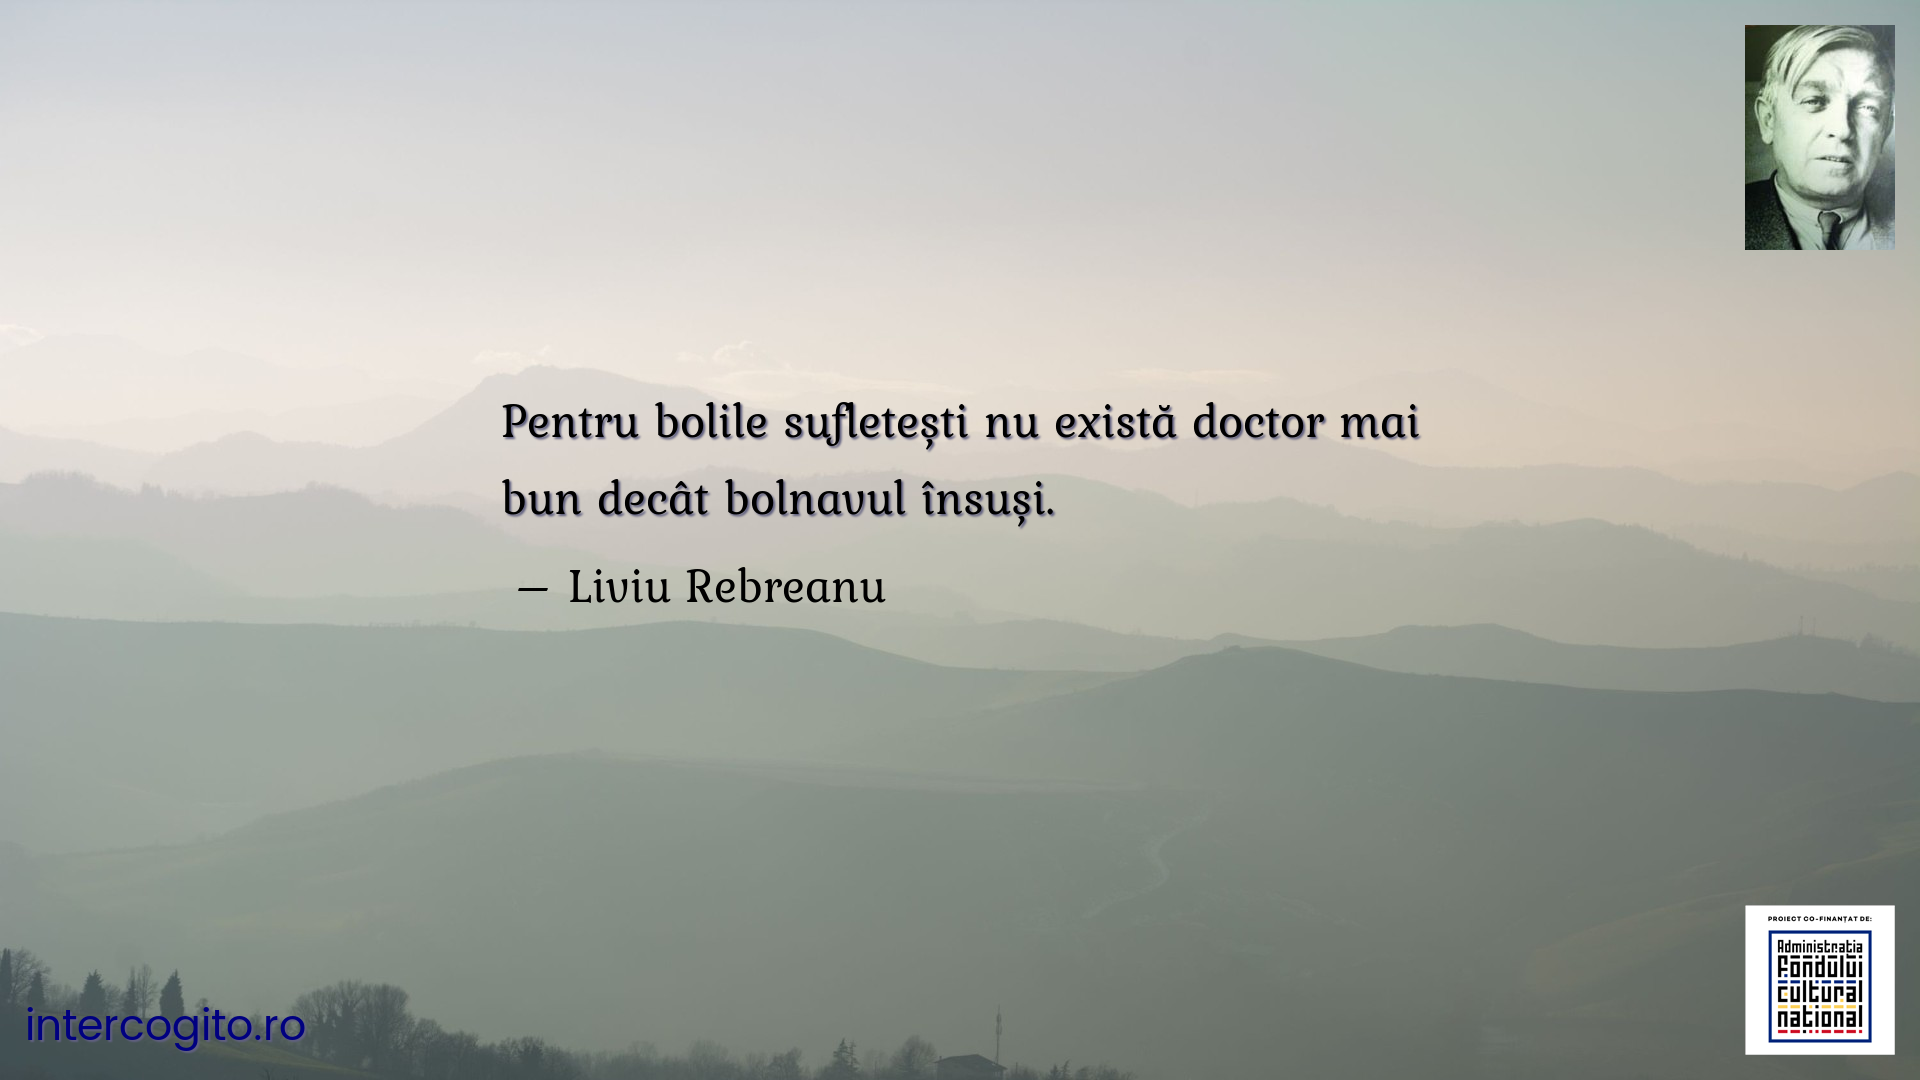 Pentru bolile sufletești nu există doctor mai bun decât bolnavul însuși.